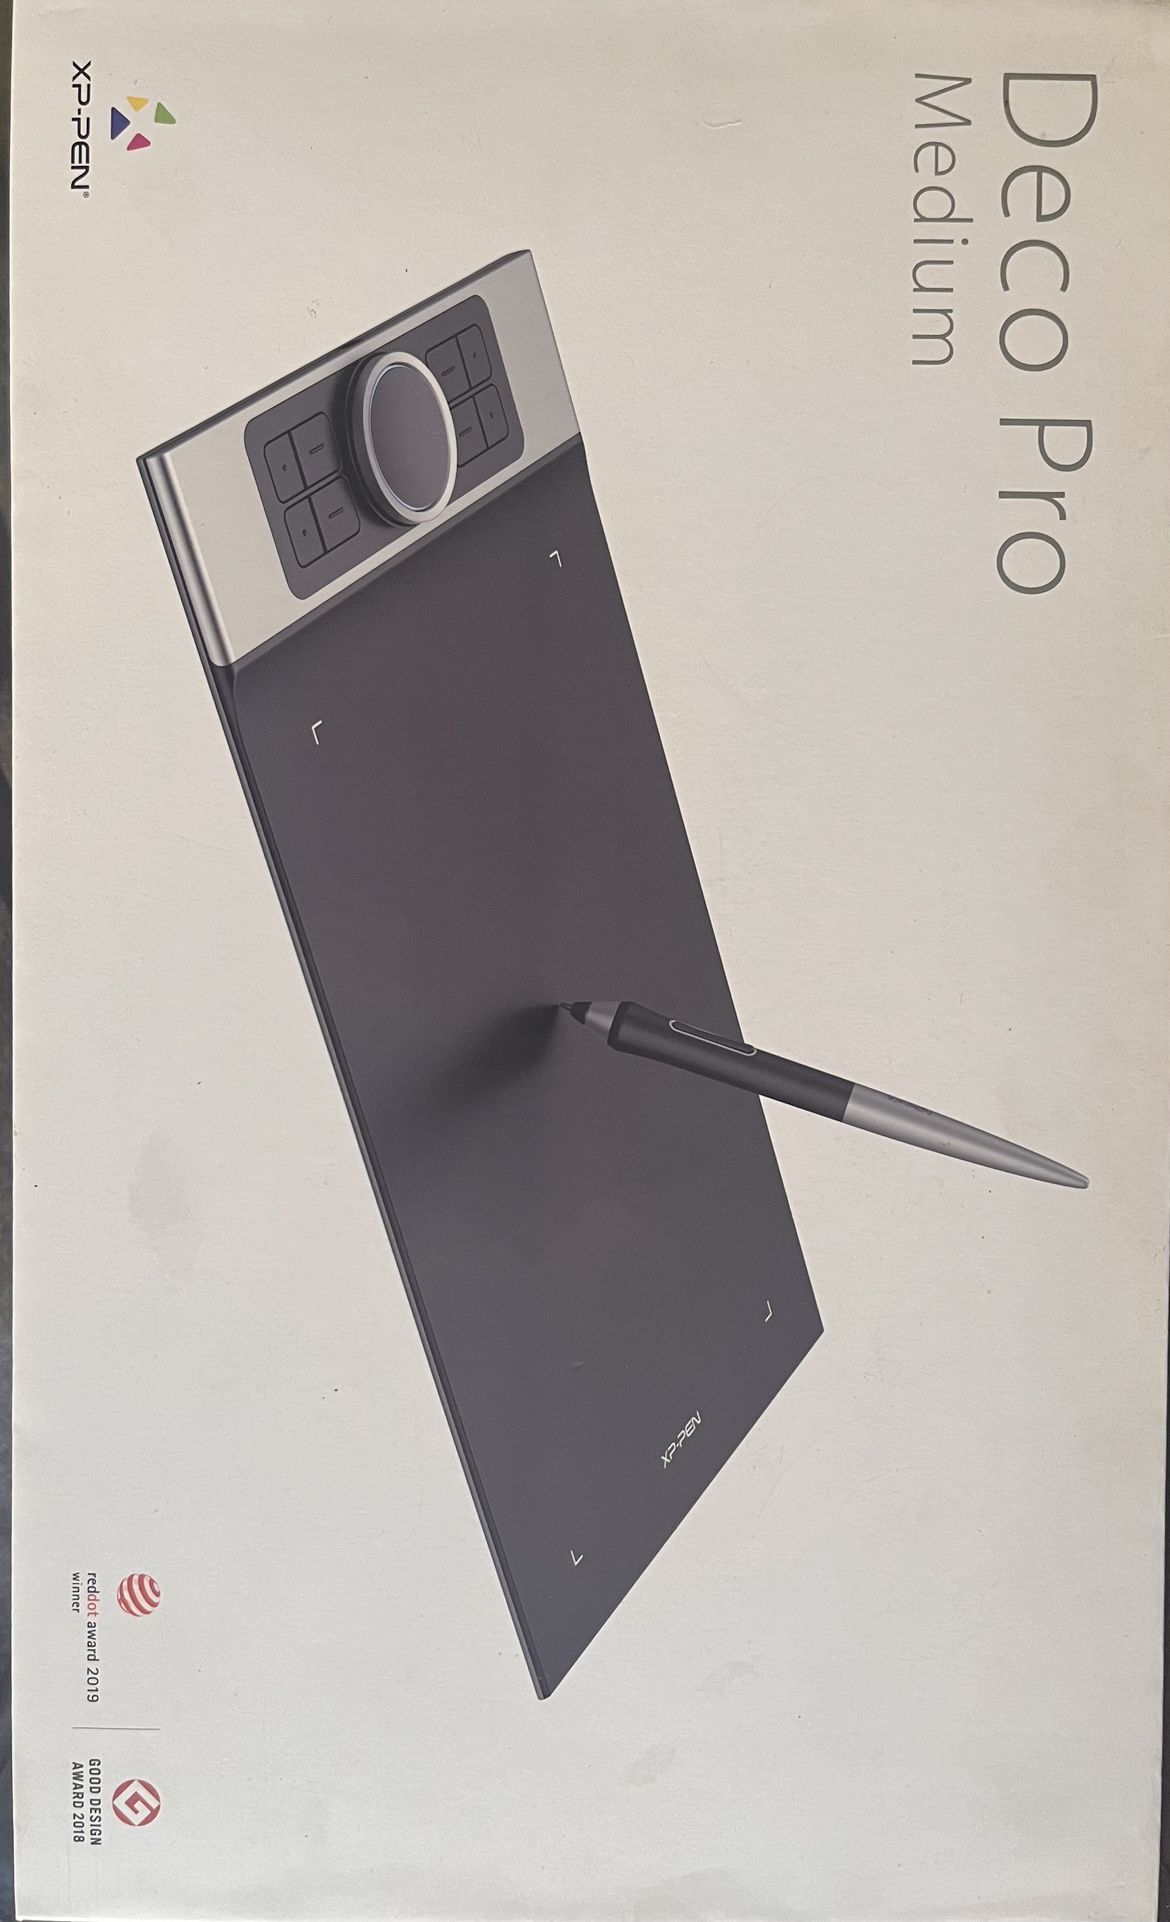 XP-Pen Deco Pro Medium